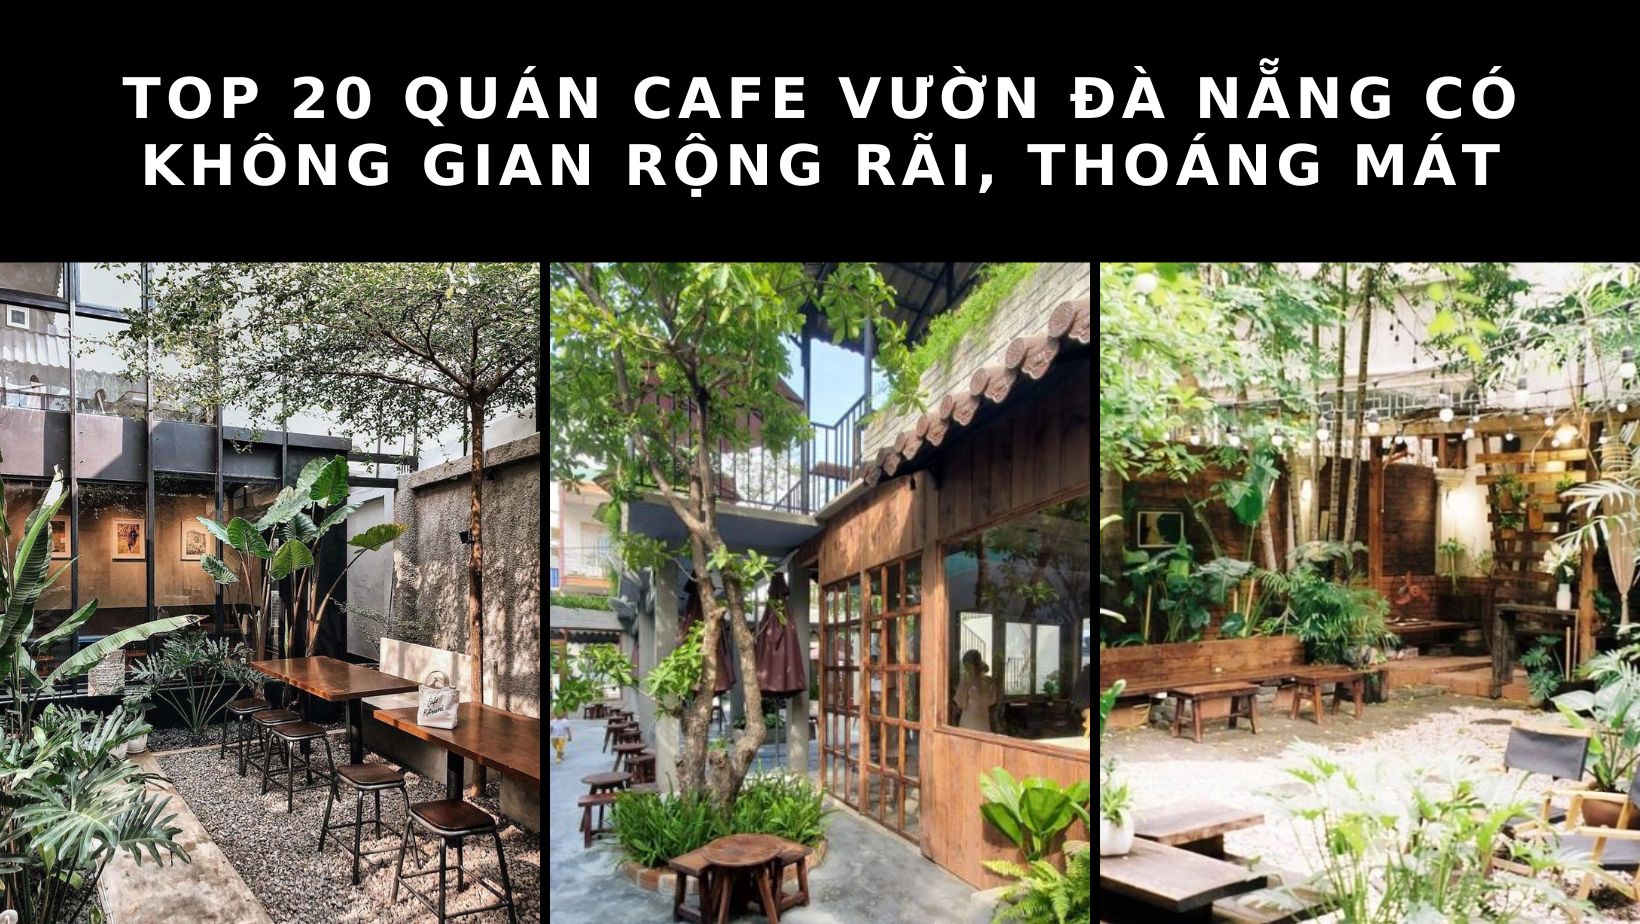 Bật mí 20 quán cafe vườn Đà Nẵng có không gian rộng rãi, thoáng mát